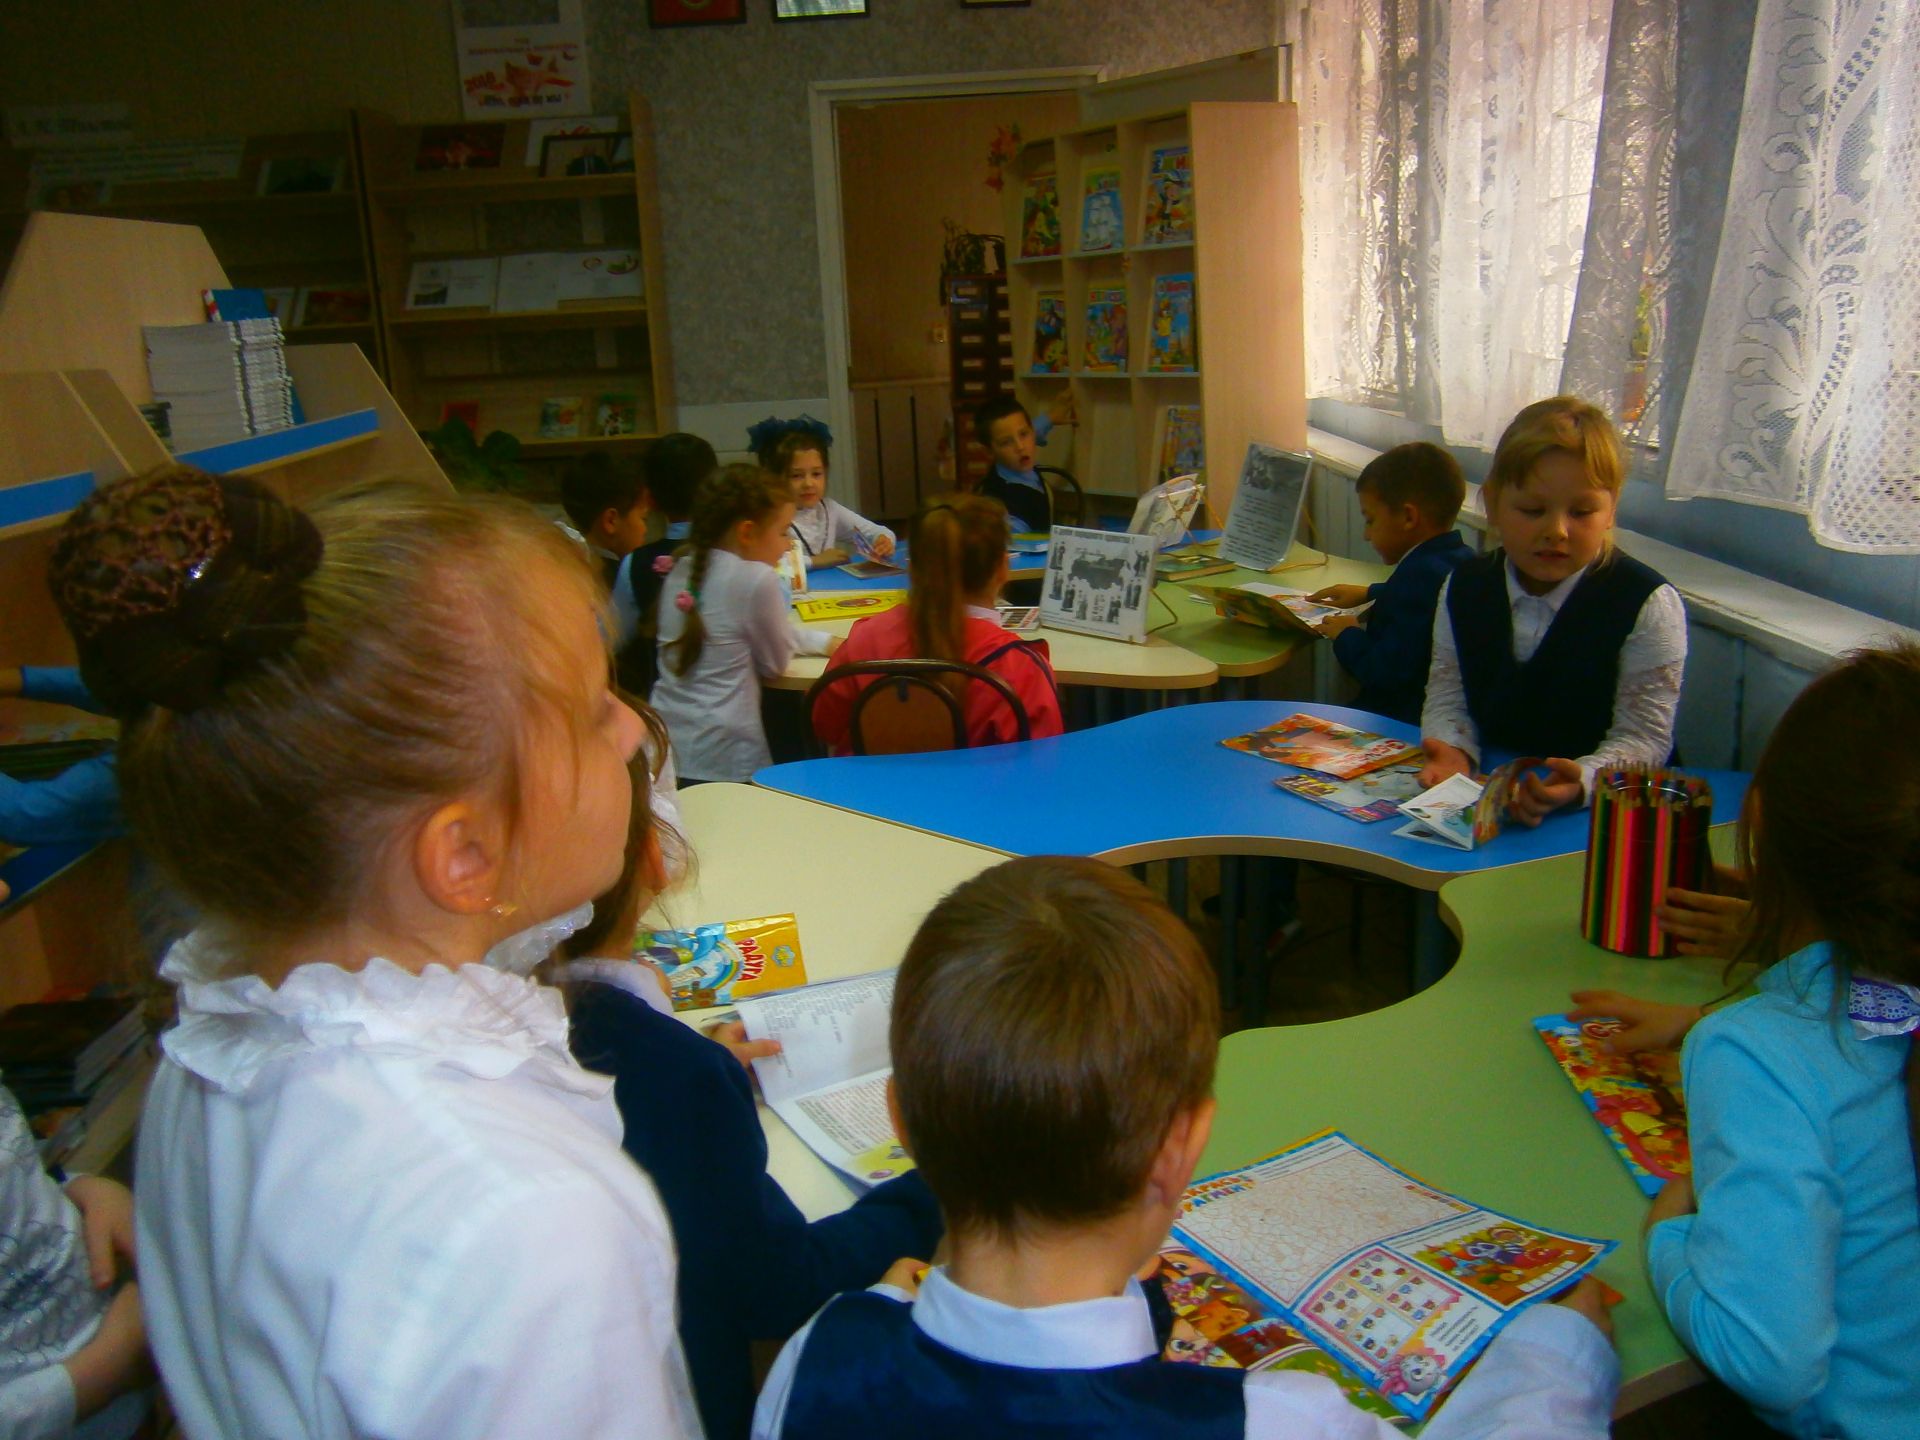 В районной детской библиотеке прошли мероприятия к 100-летию ВЛКСМ